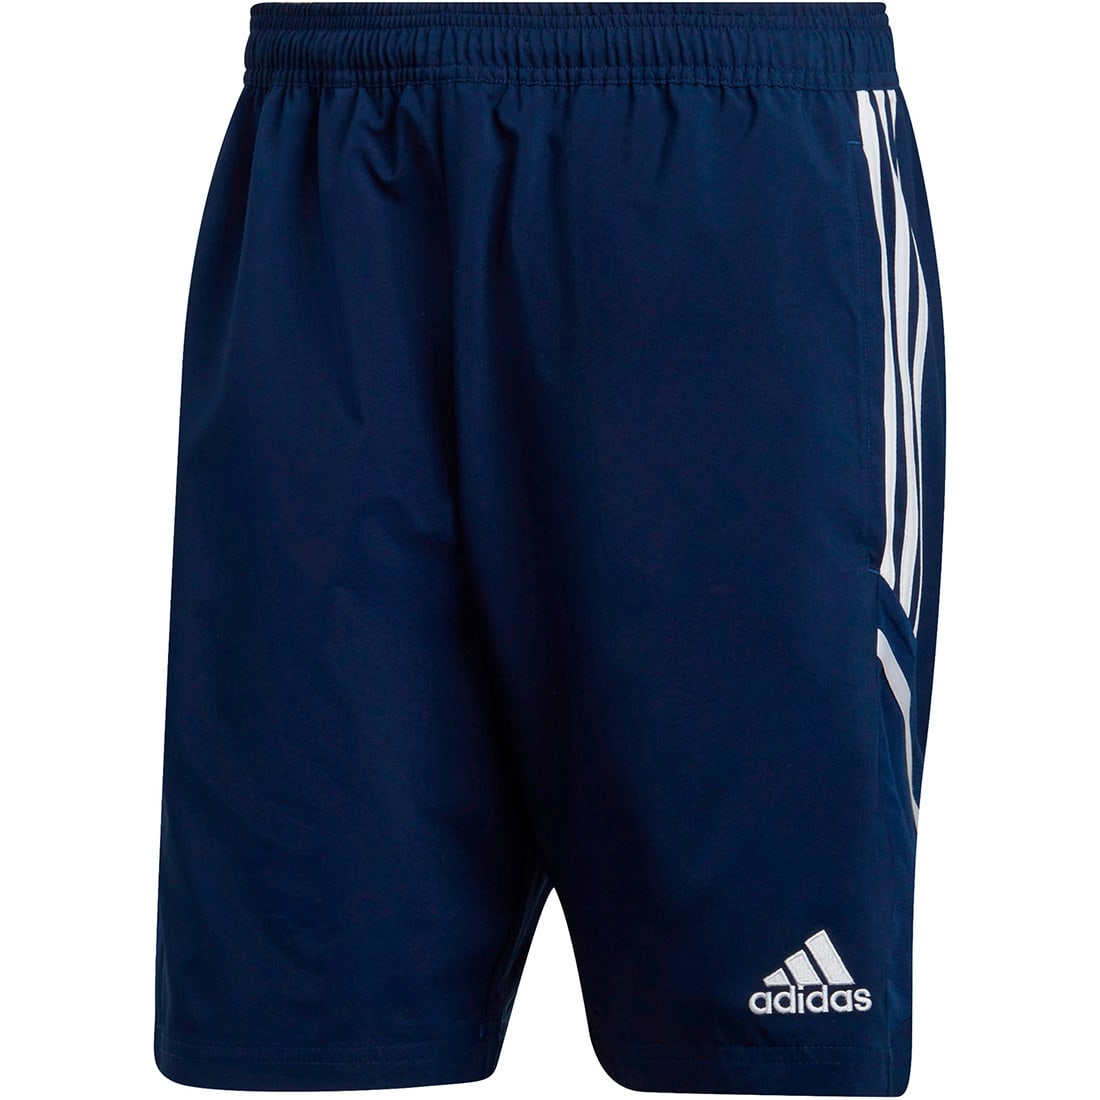 Adidas Herren Downtime Shorts Condivo 22 blau-weiß